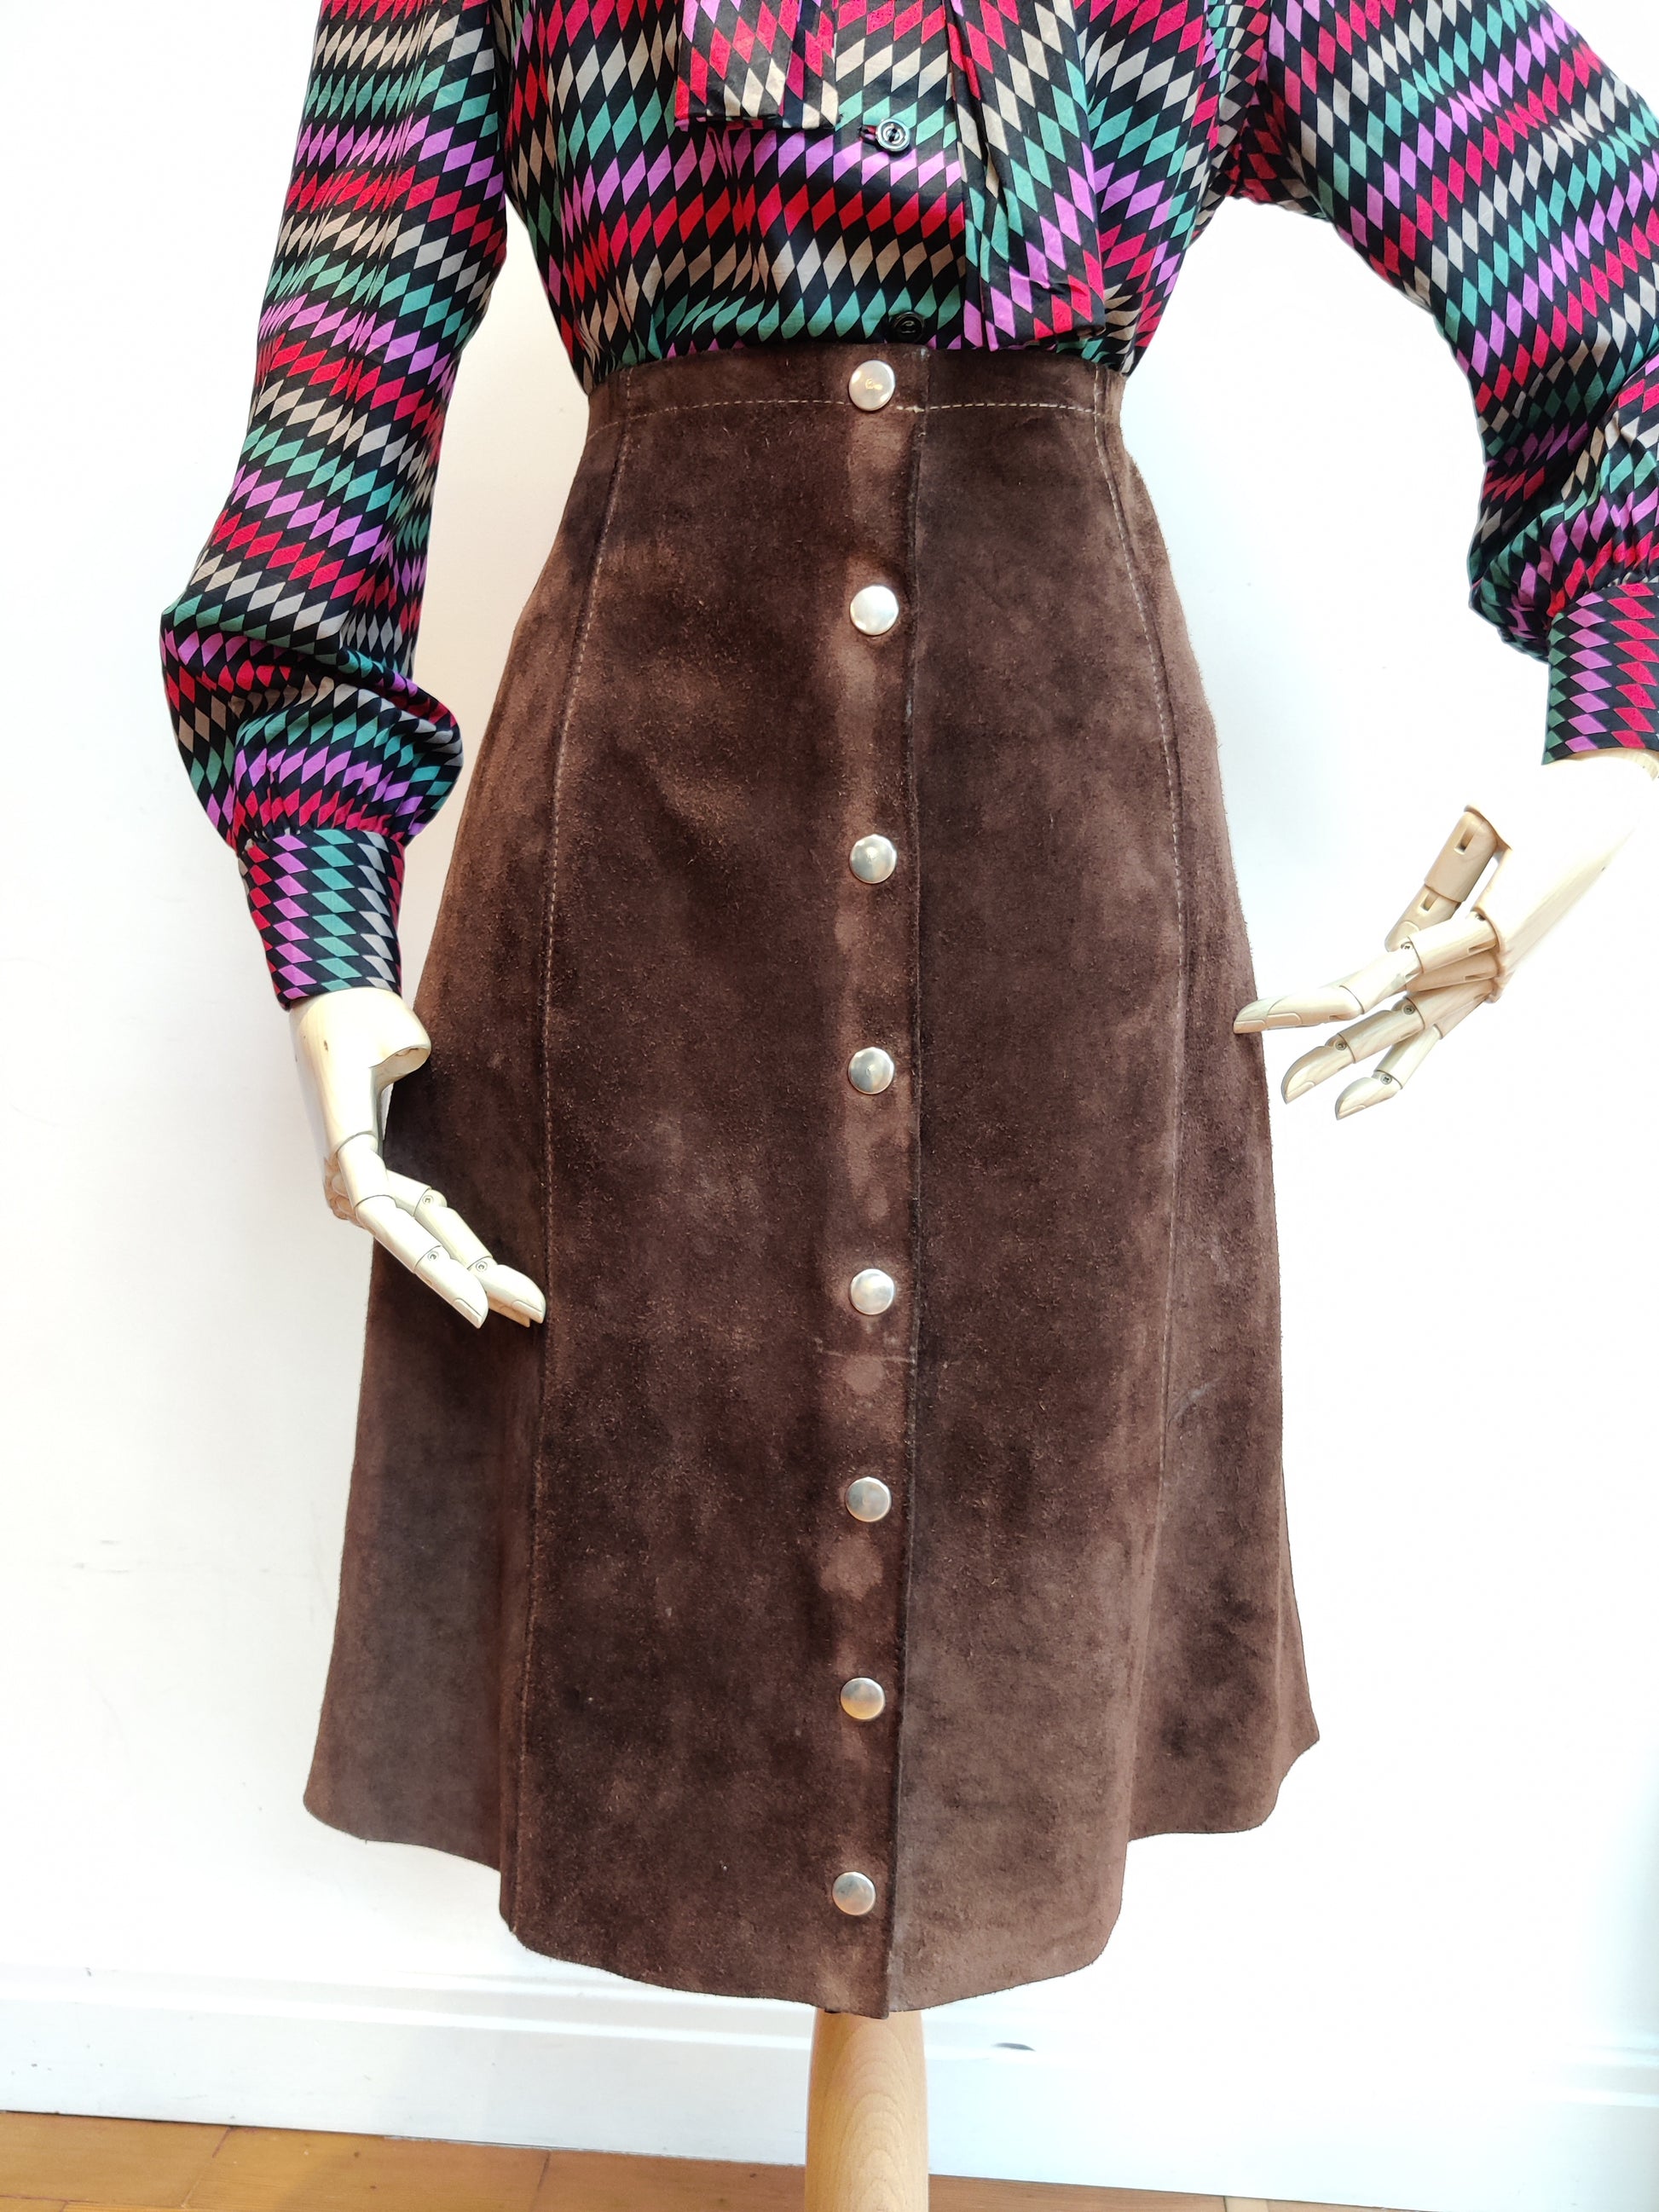 Brown suede vintage skirt